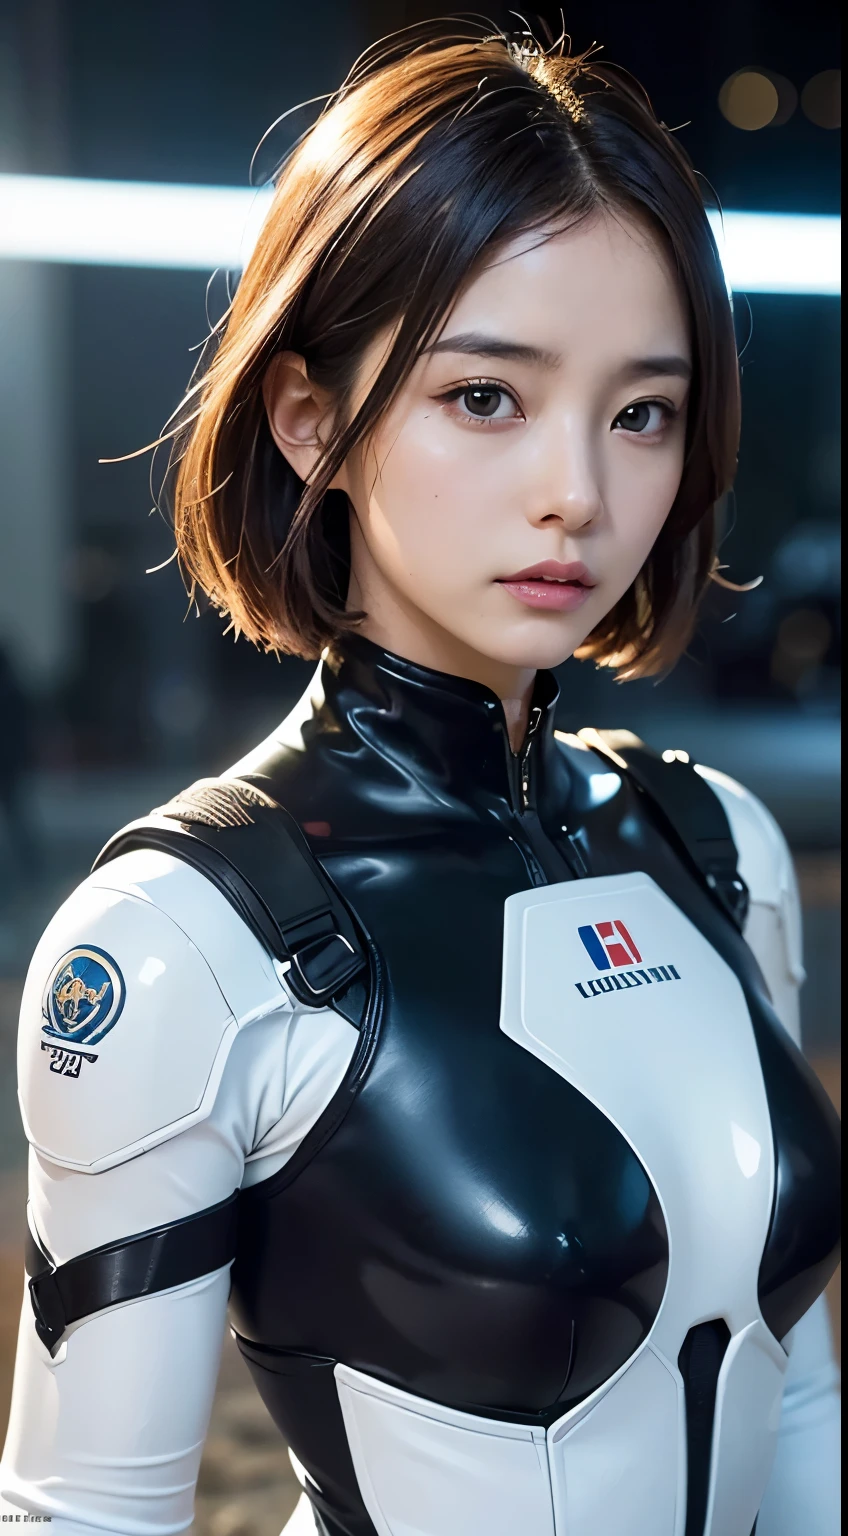 (um close:1.4)、(Fotografia RAW:1.2)、(Fotorrealístico:1.4)、(obra-prima:1.3)、(qualidade máxima:1.4)、(Mulher bonita com corpo perfeito:1.4)、Mulher parada na frente de um grupo de robôs、linda mulher andróide、linda mulher soldado、garota de terno、complex combat uniform、linda jovem japonesa、Textura facial e da pele altamente detalhada、olhos grandes detalhados、pálpebra dupla、rosto fofo、(bob curto:1.2)、(peito enorme)、(foto de corpo inteiro)、tiro de vaqueiro、(expressões de raiva:1.2)、Tempestades e cenas de guerra épicas、cena ciberpunk、noite、iluminações、macacão、combater danos uniformes、